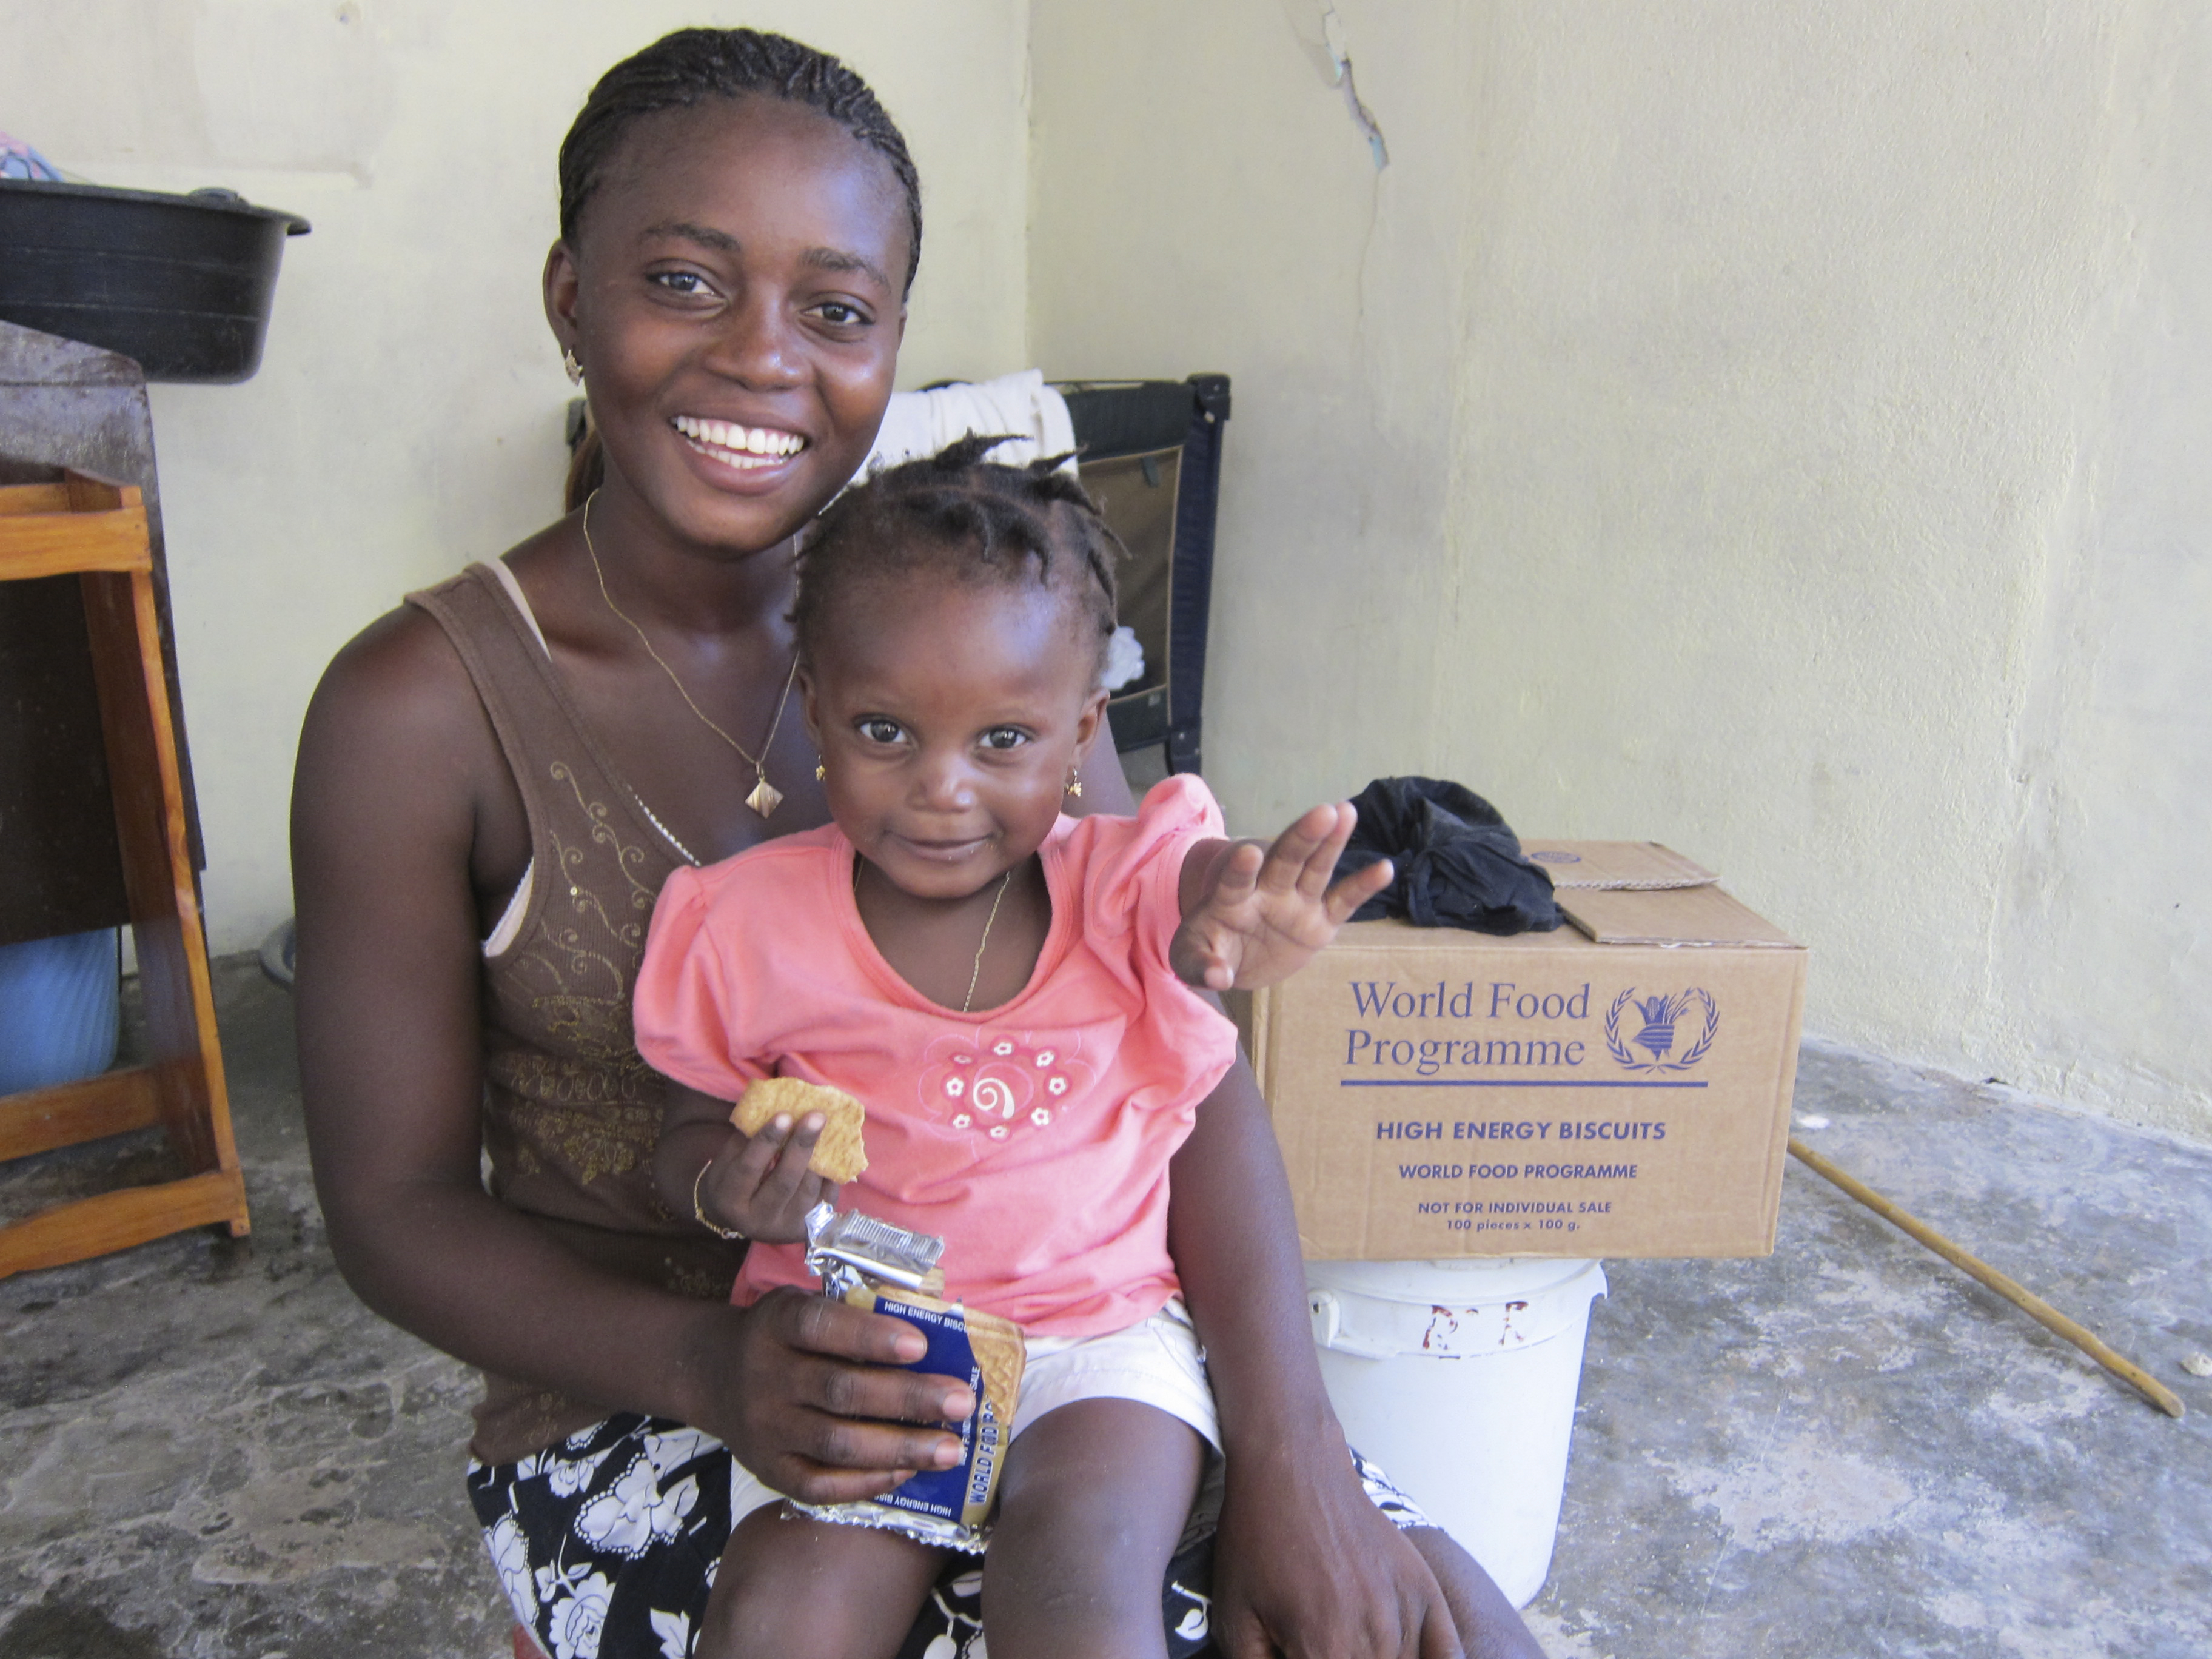 5 Jahre nach dem Erdbeben: WFP investiert in die Zukunft Haitis